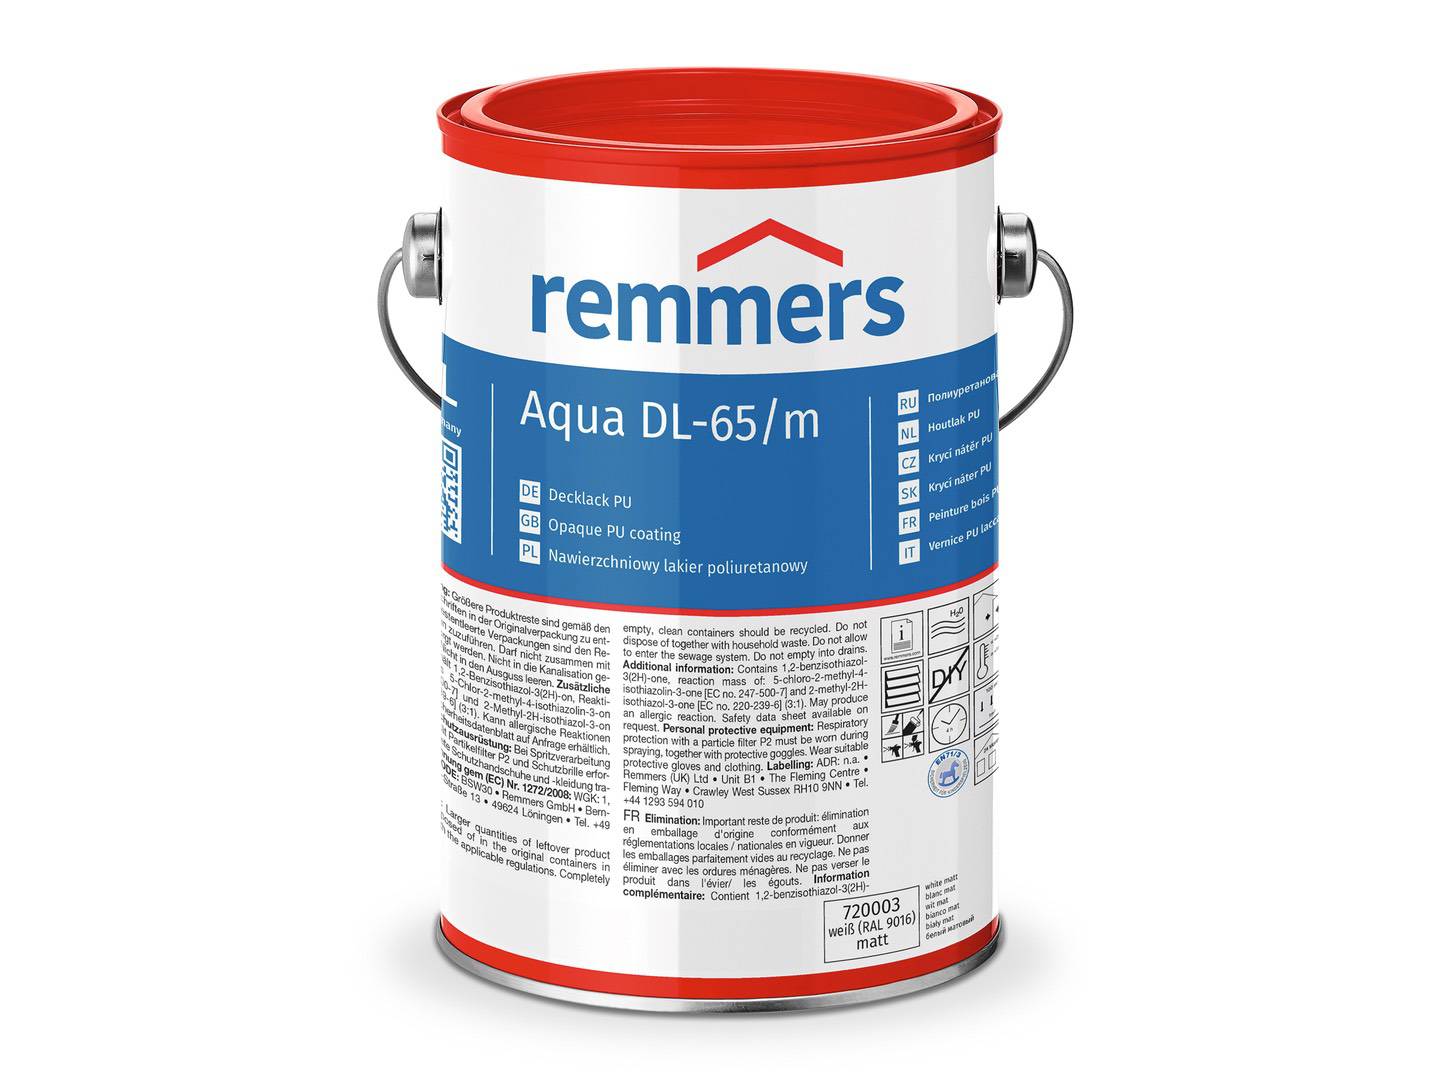 REMMERS Aqua DL-65-Decklack PU weiß (RAL 9016) seidenmatt 2,50 l